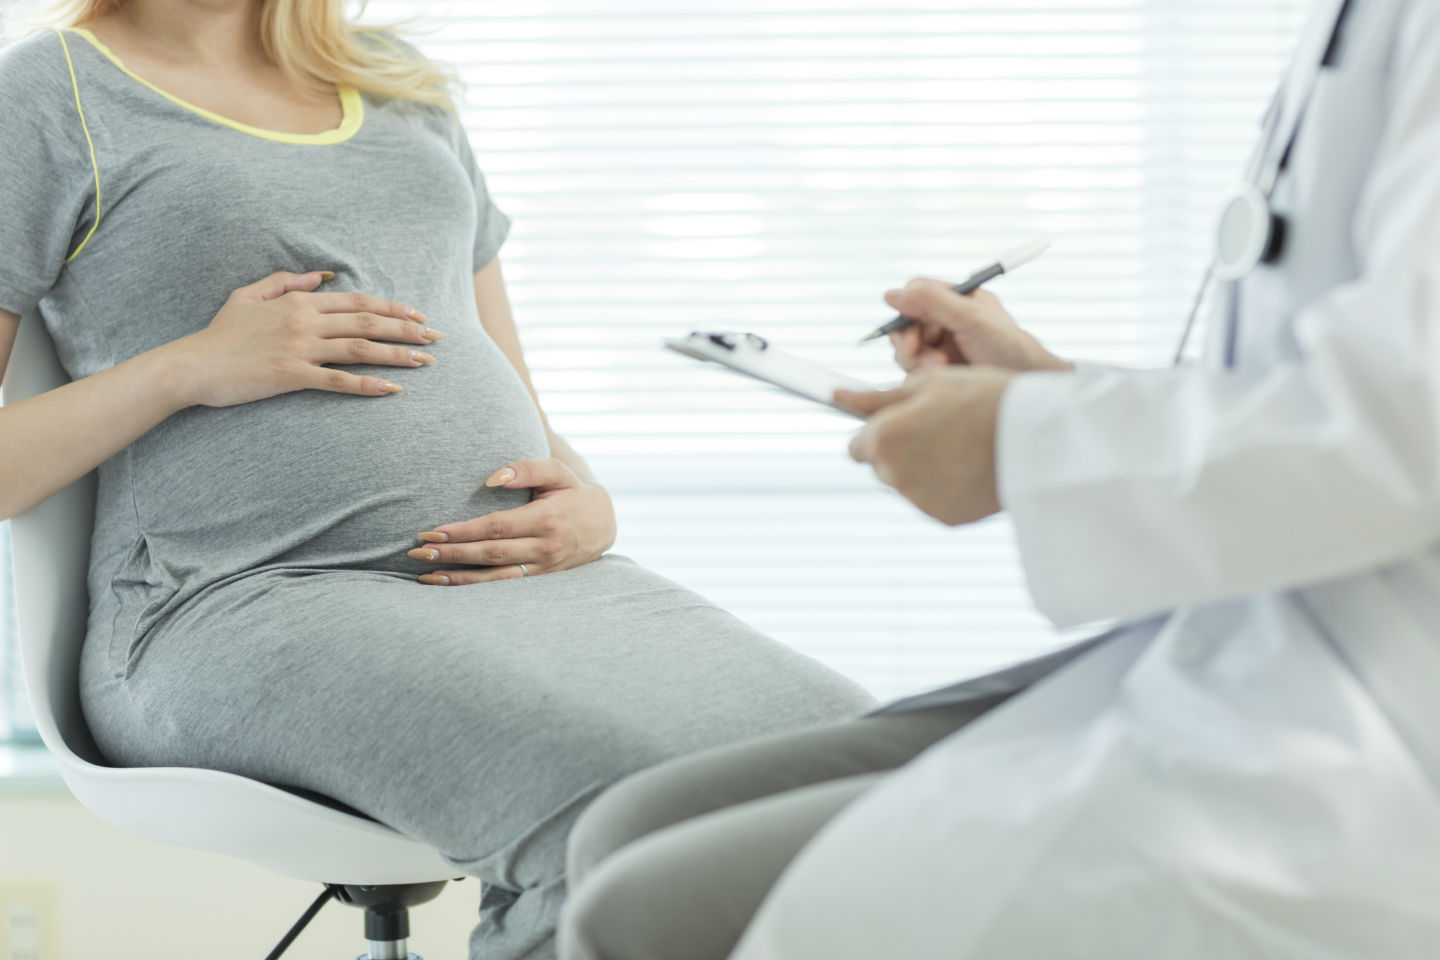 Τεχνητή διακοπή εγκυμοσύνης – οι συστάσεις της Εθνικής Επιτροπής Βιοηθικής